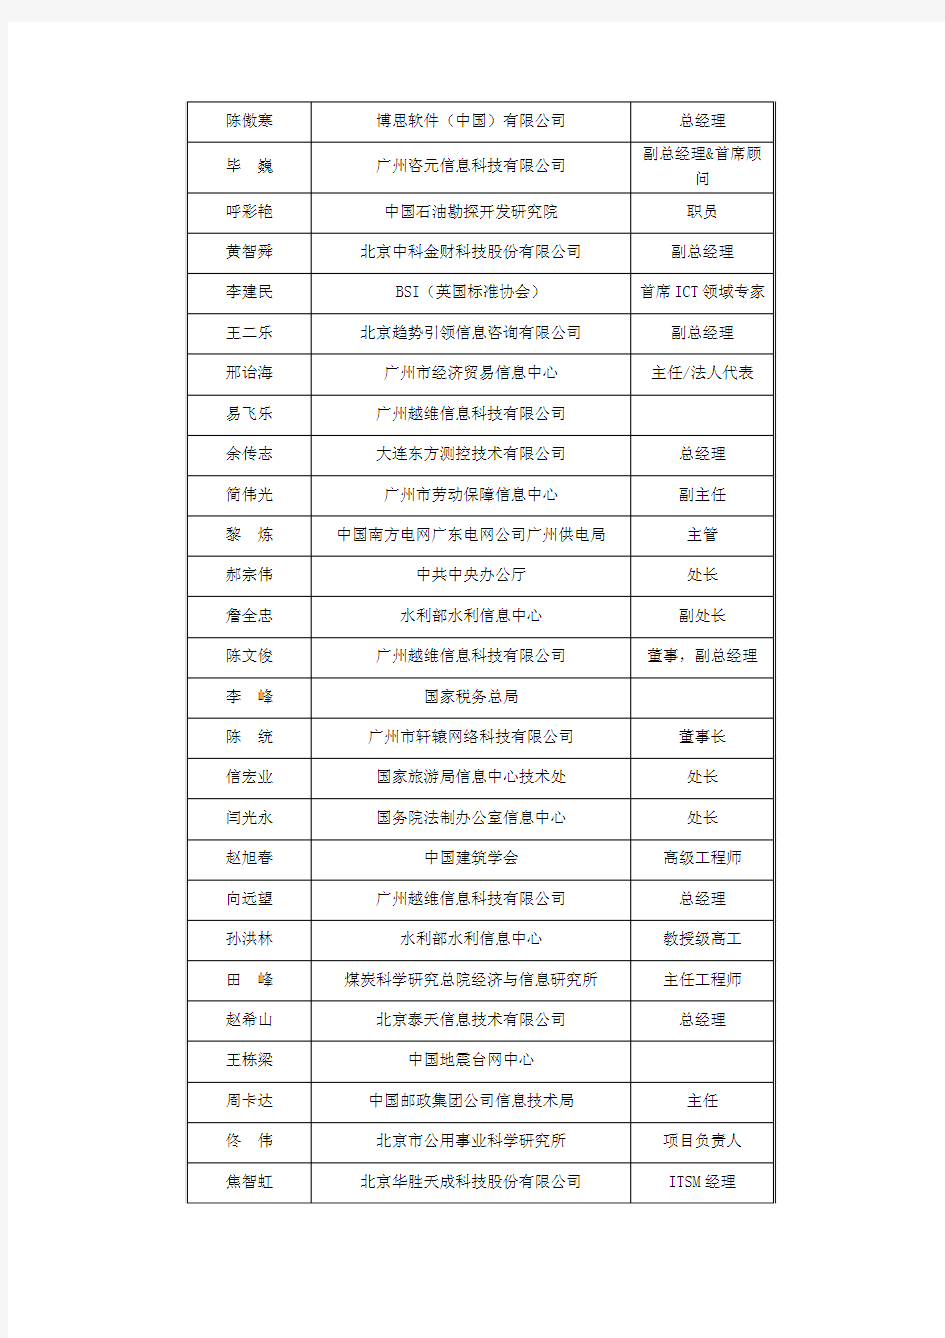 中国IT服务管理论坛筹委会成员名单 (排名不分